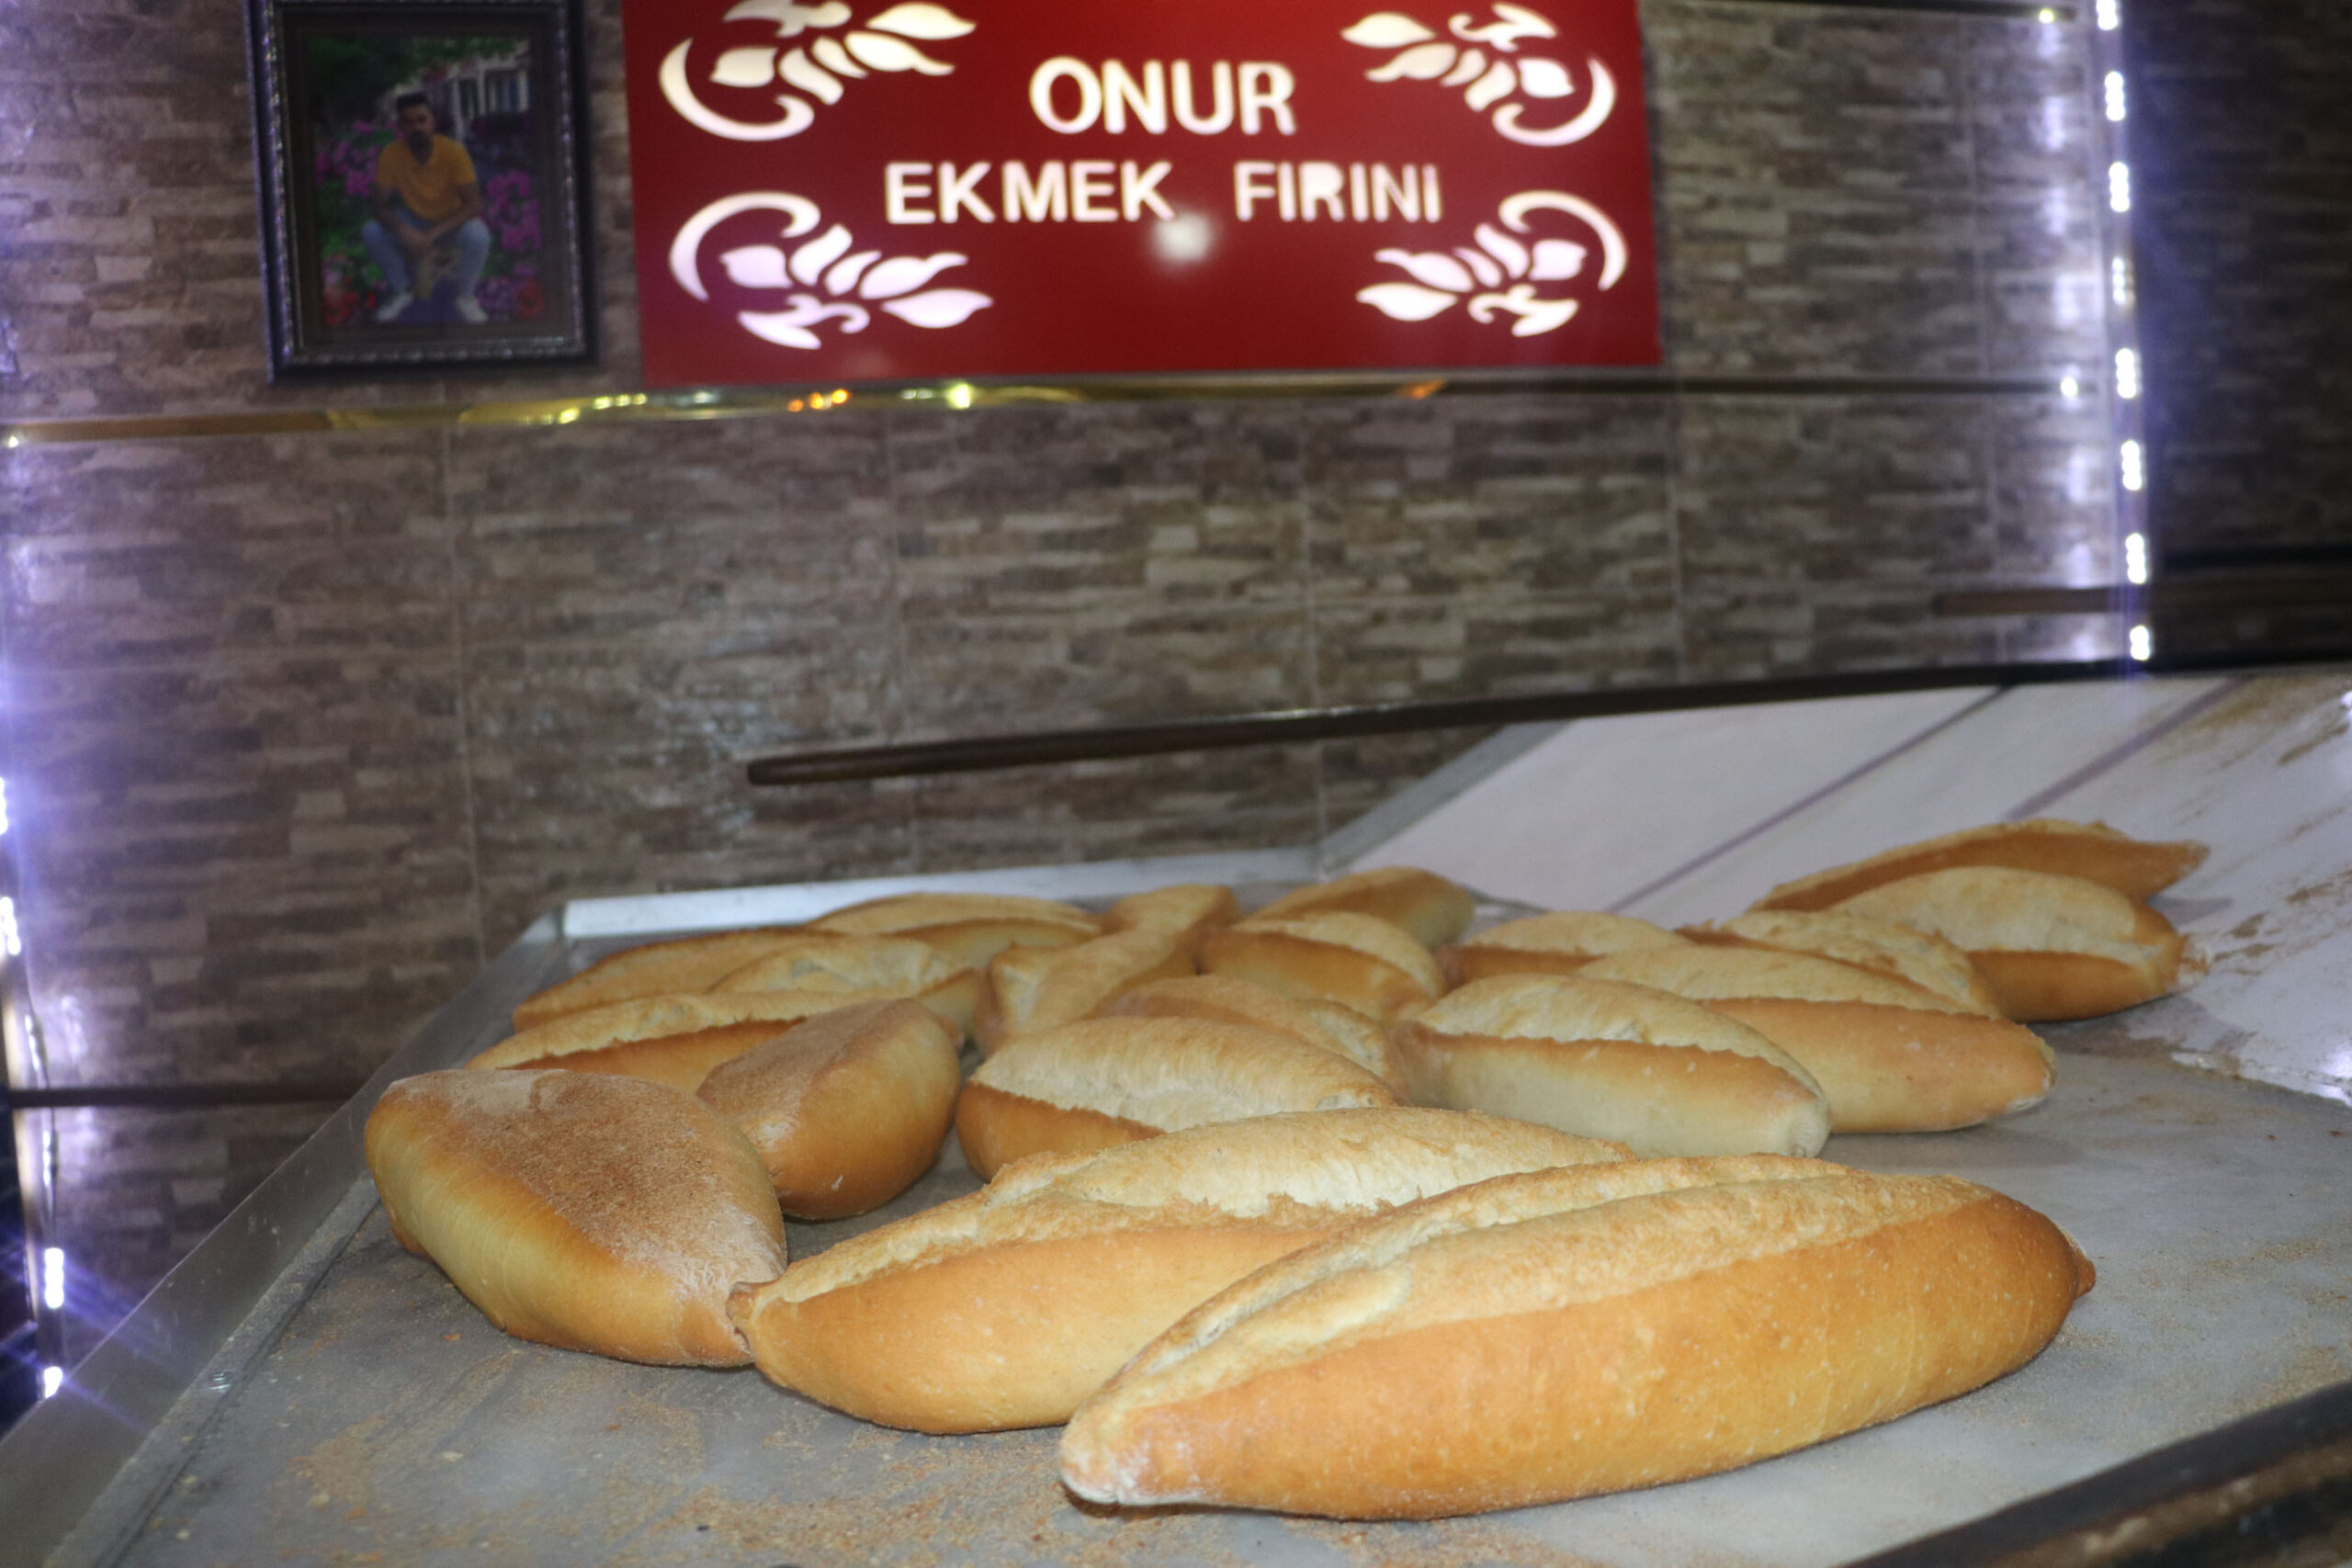 Samsun’da 200 gram ekmeğin fiyatı 3 liraya yükseltildi